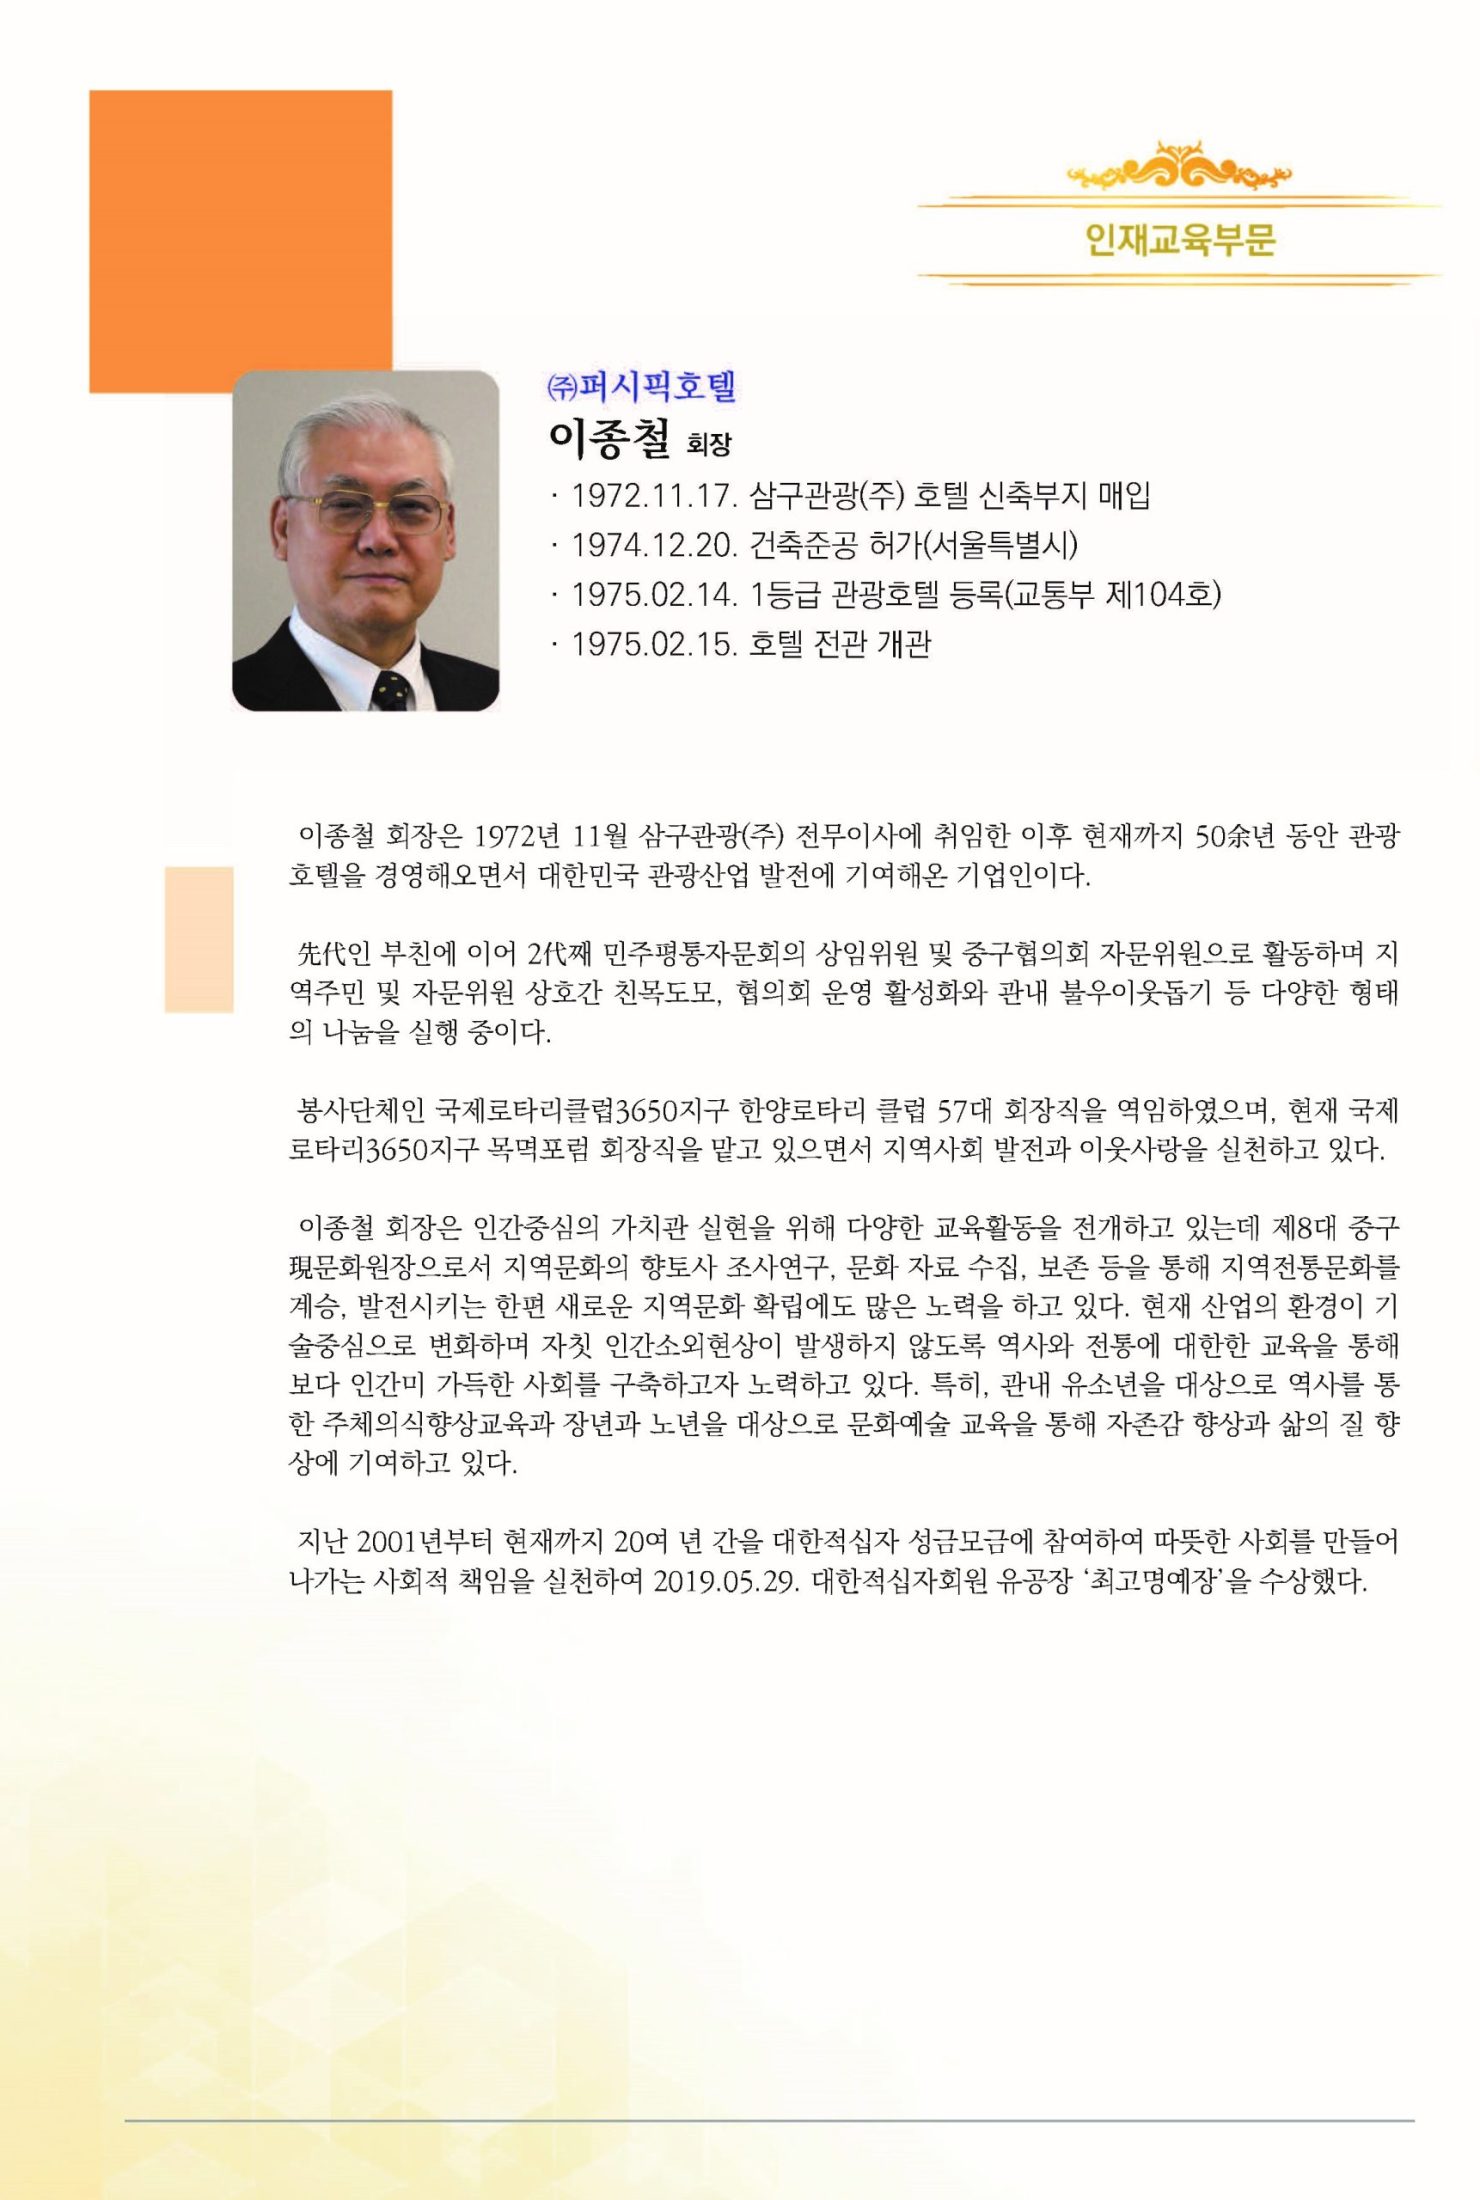 6회 HDI 인간경영대상 시상식(책자)_20201014(2)_페이지_07